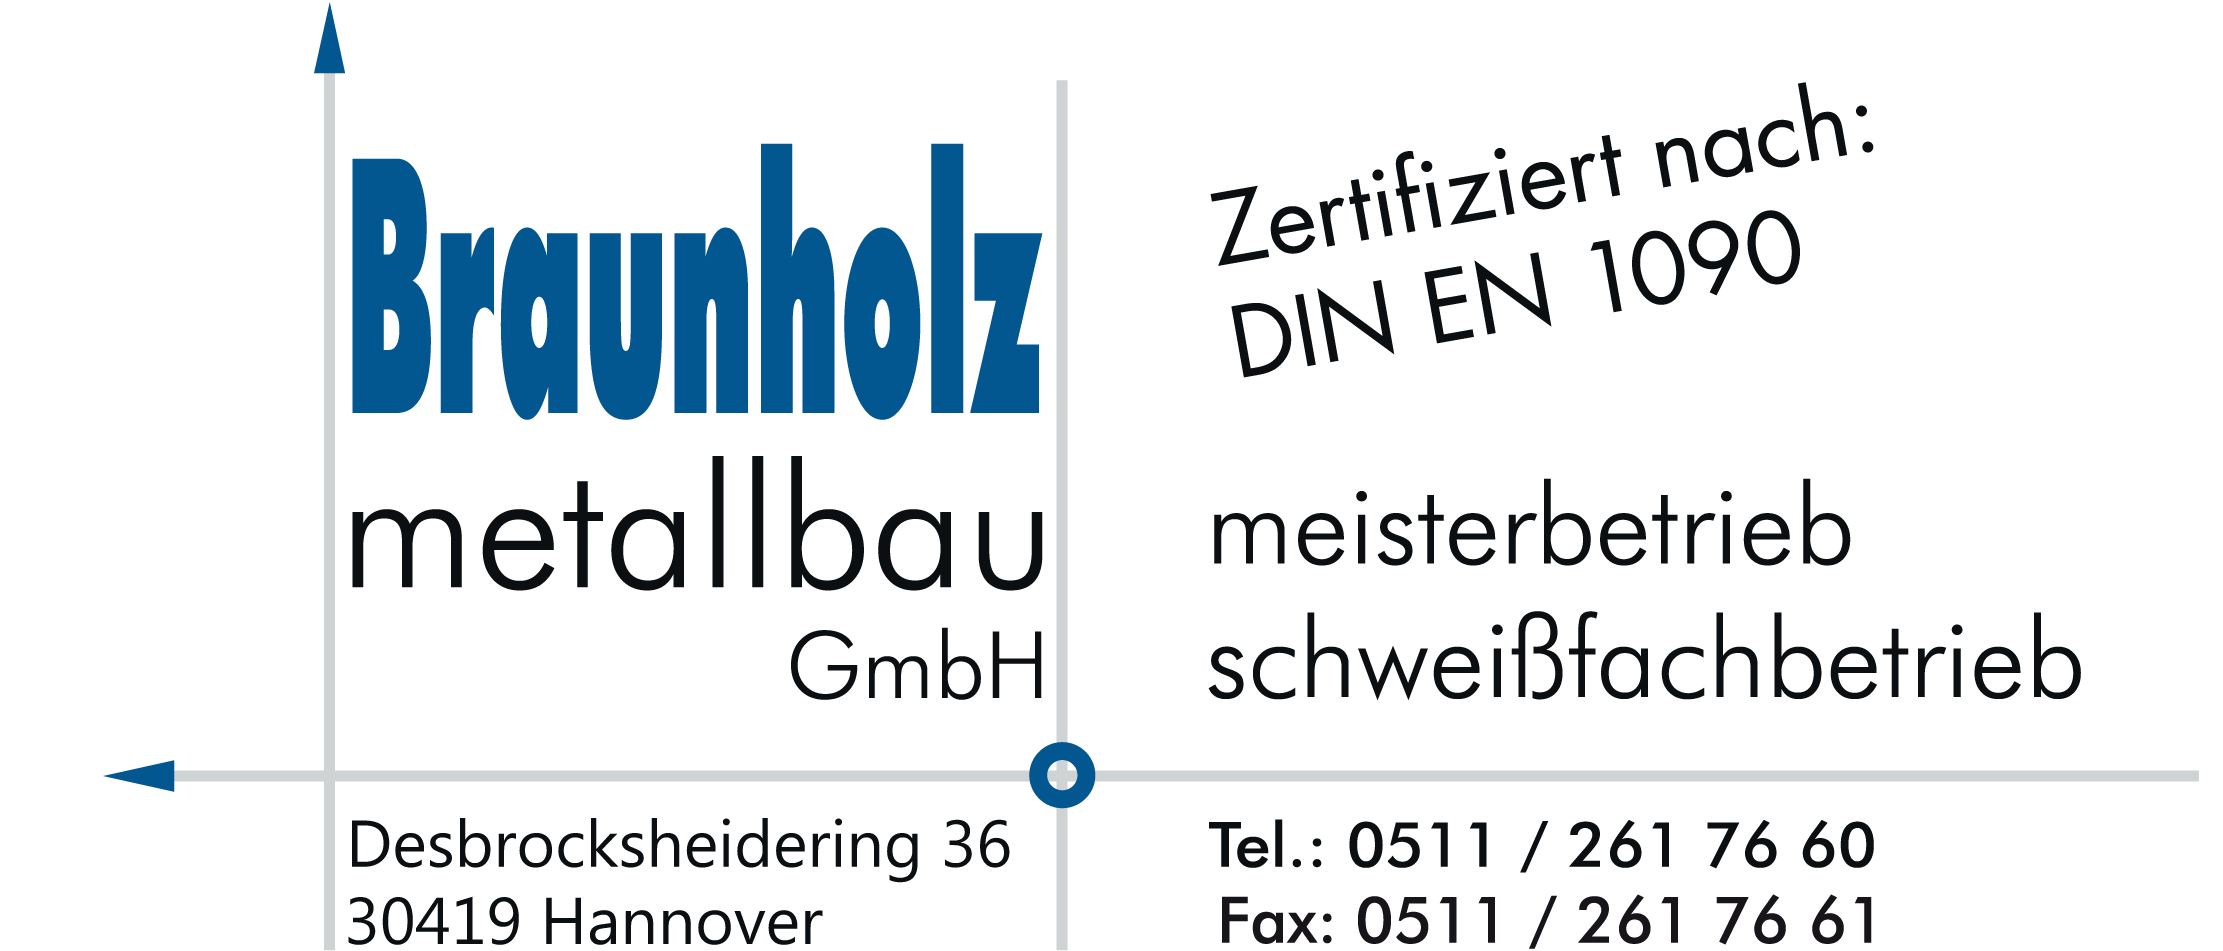 Braunholz Metallbau GmbH